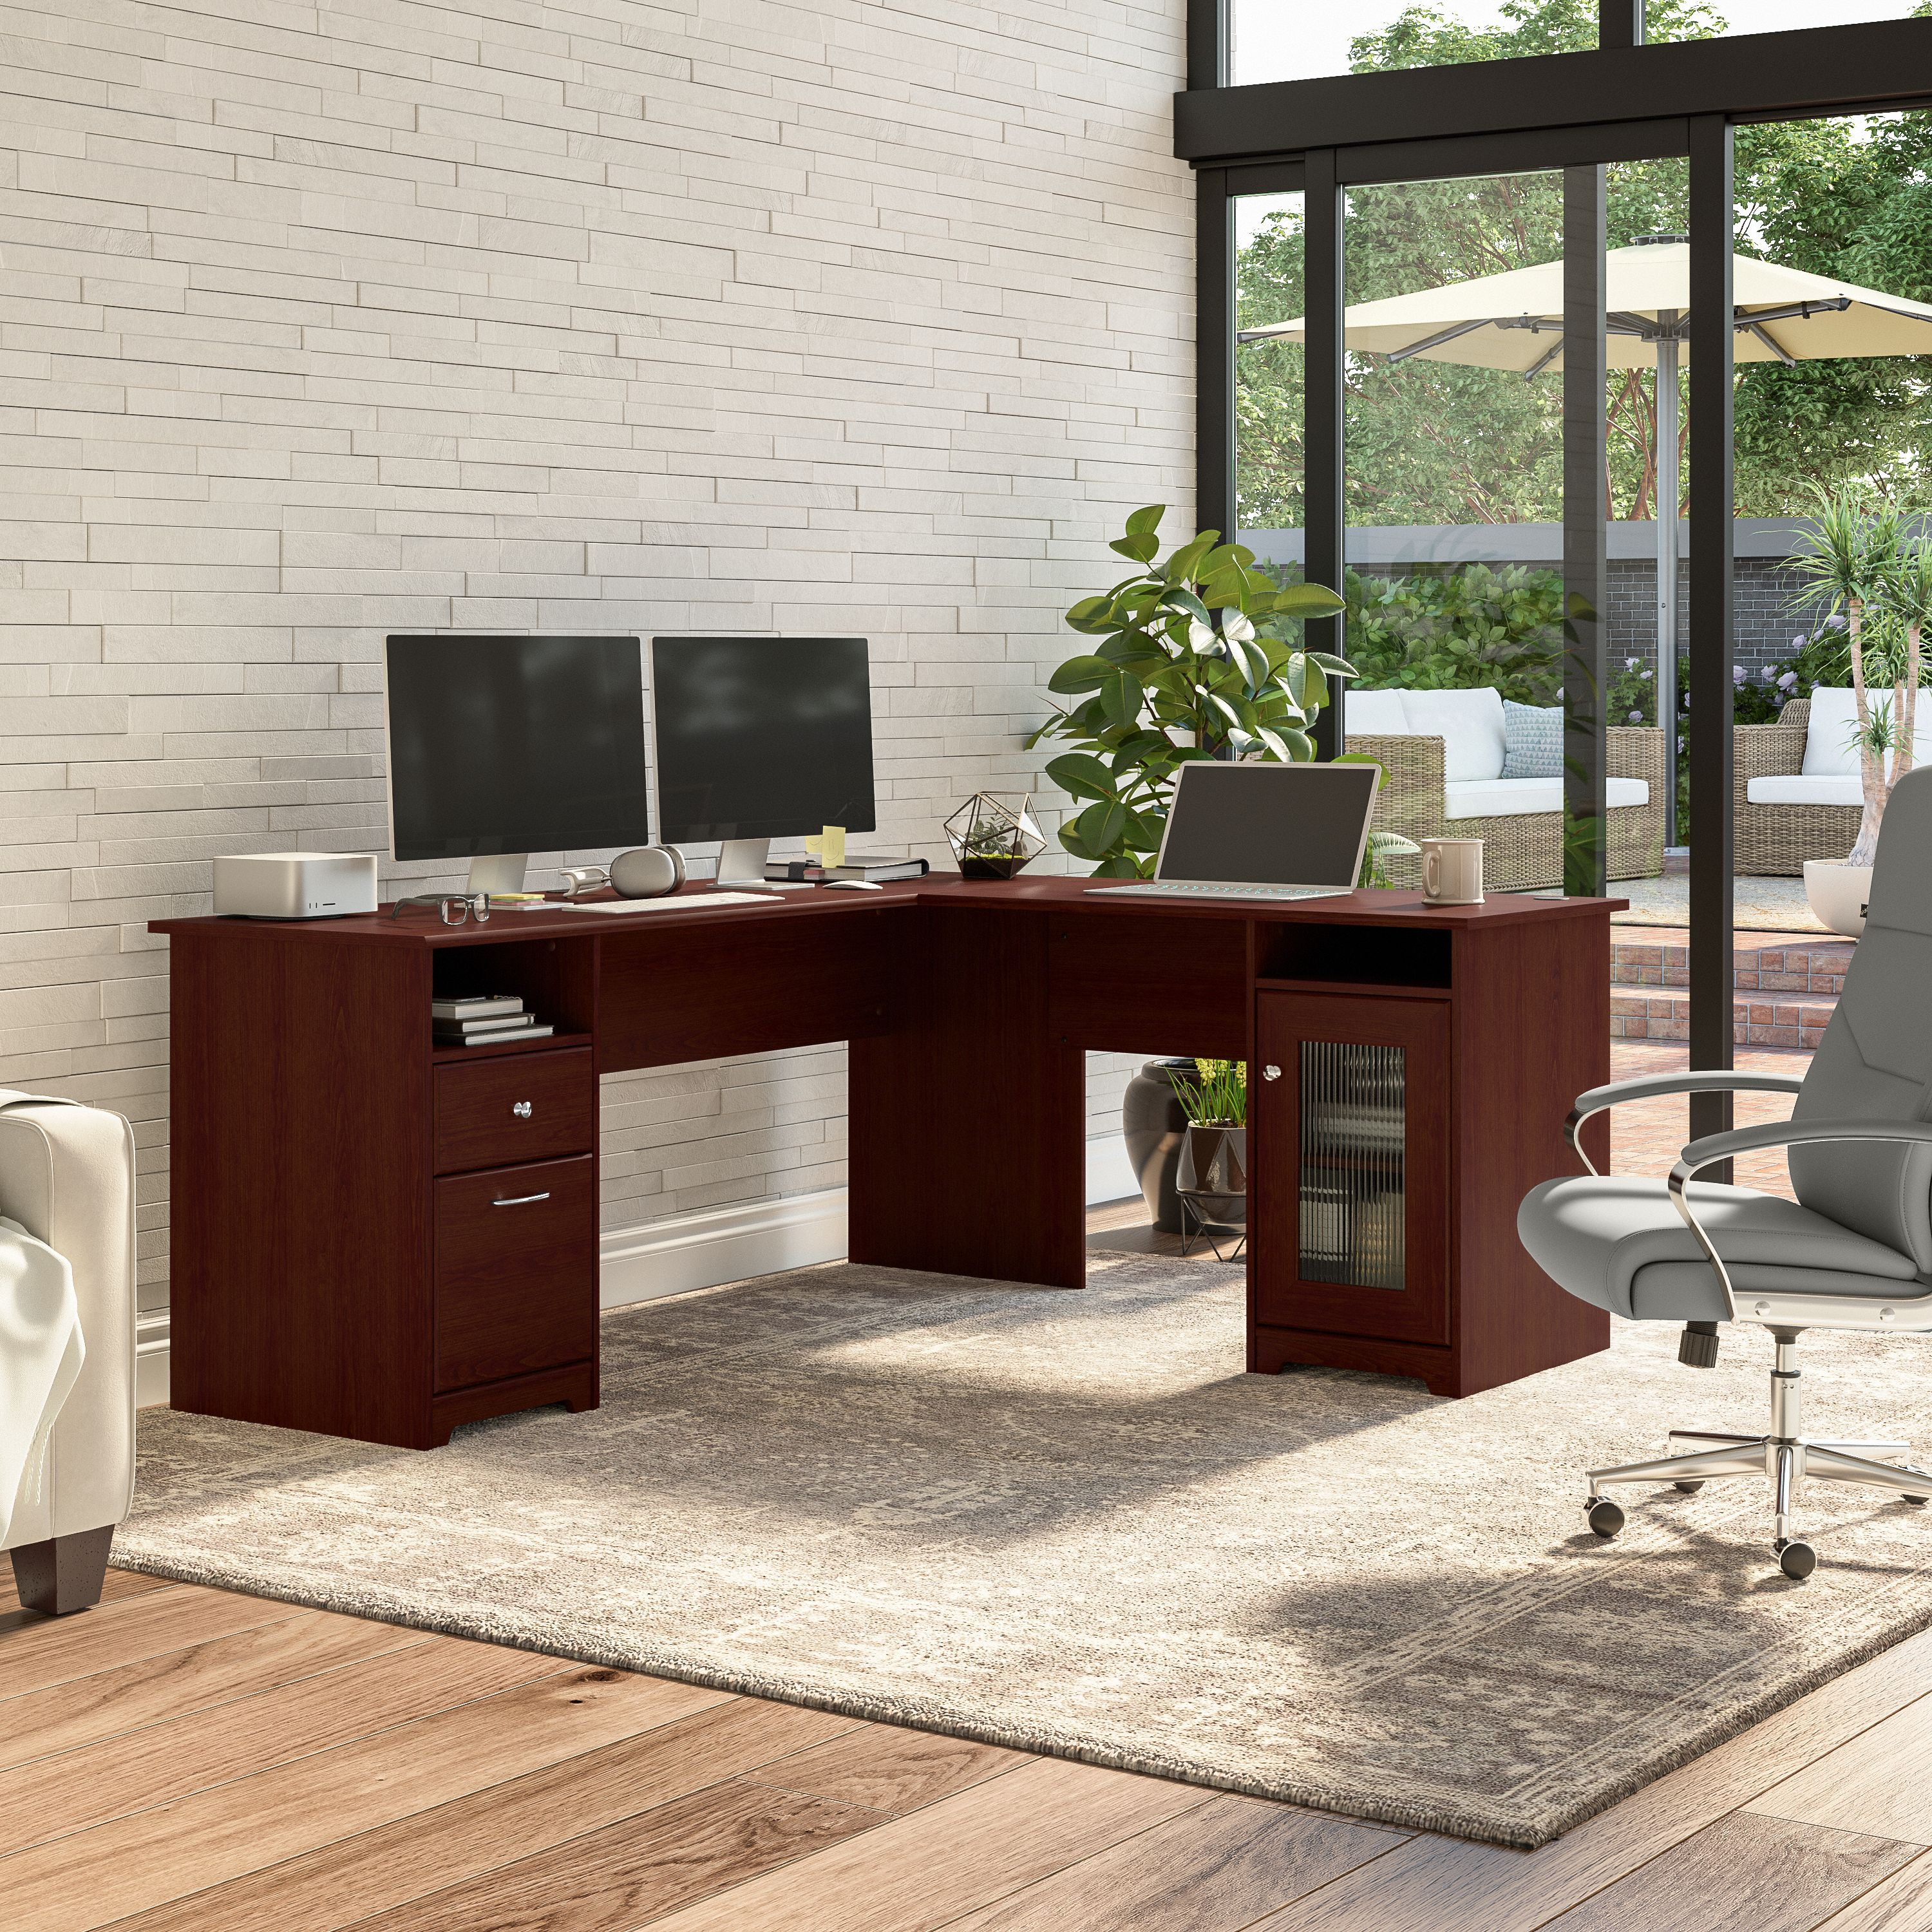 Shop Bush Furniture Cabot 72W L Shaped Computer Desk with Storage 01 CAB072HVC #color_harvest cherry